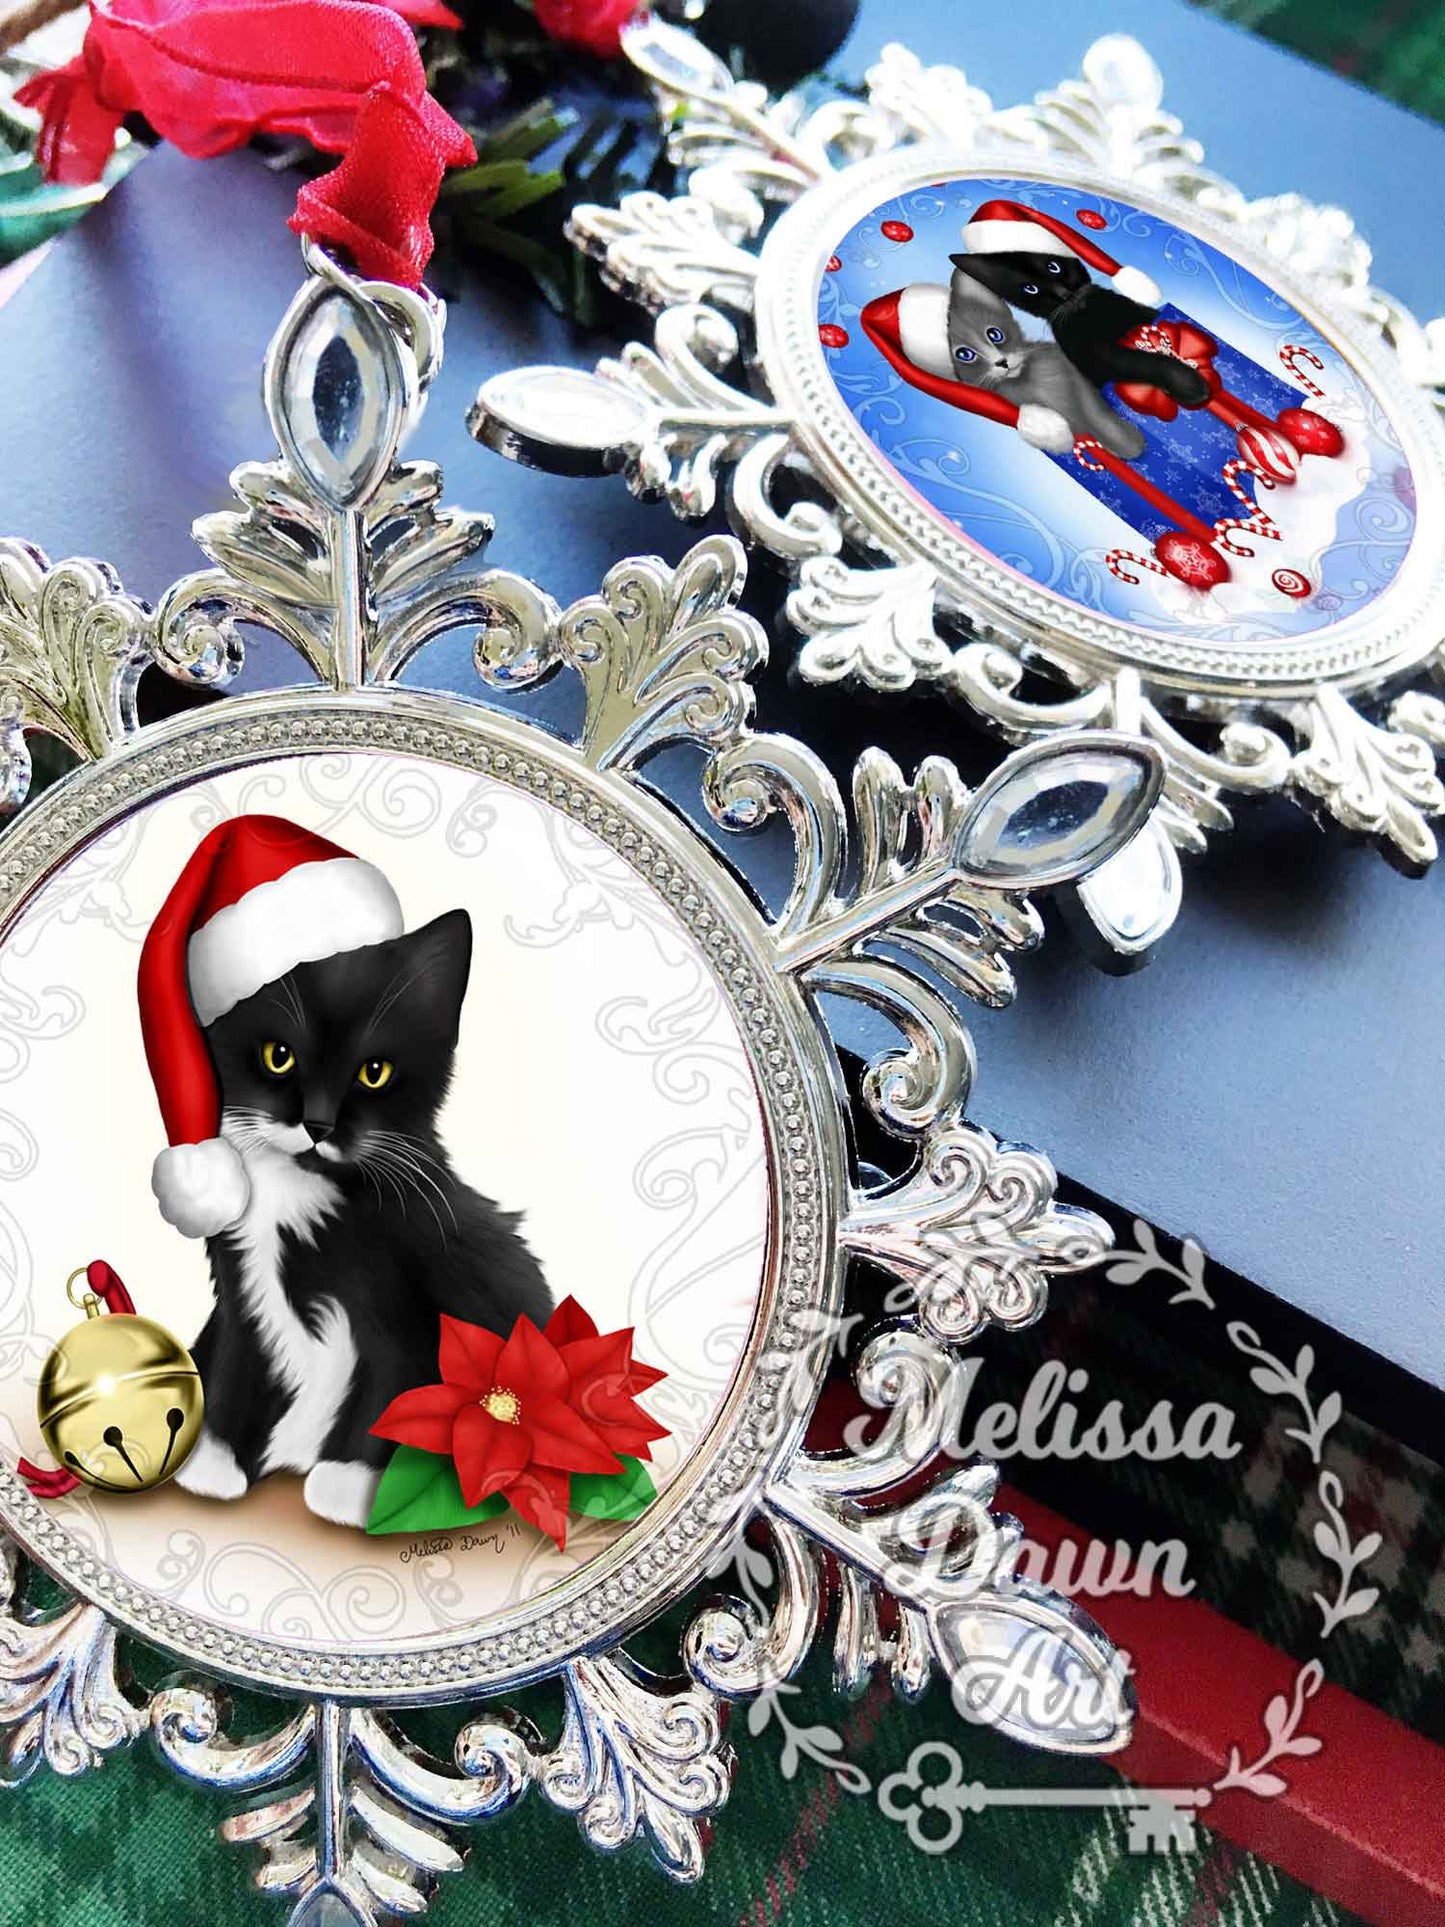 Siamese Cat Ornament / Personalize Cat Ornament / Cat Ornament / Siamese Memorial / Santa Cat Ornament / Cat in Santa Hat / Siamese Ornament